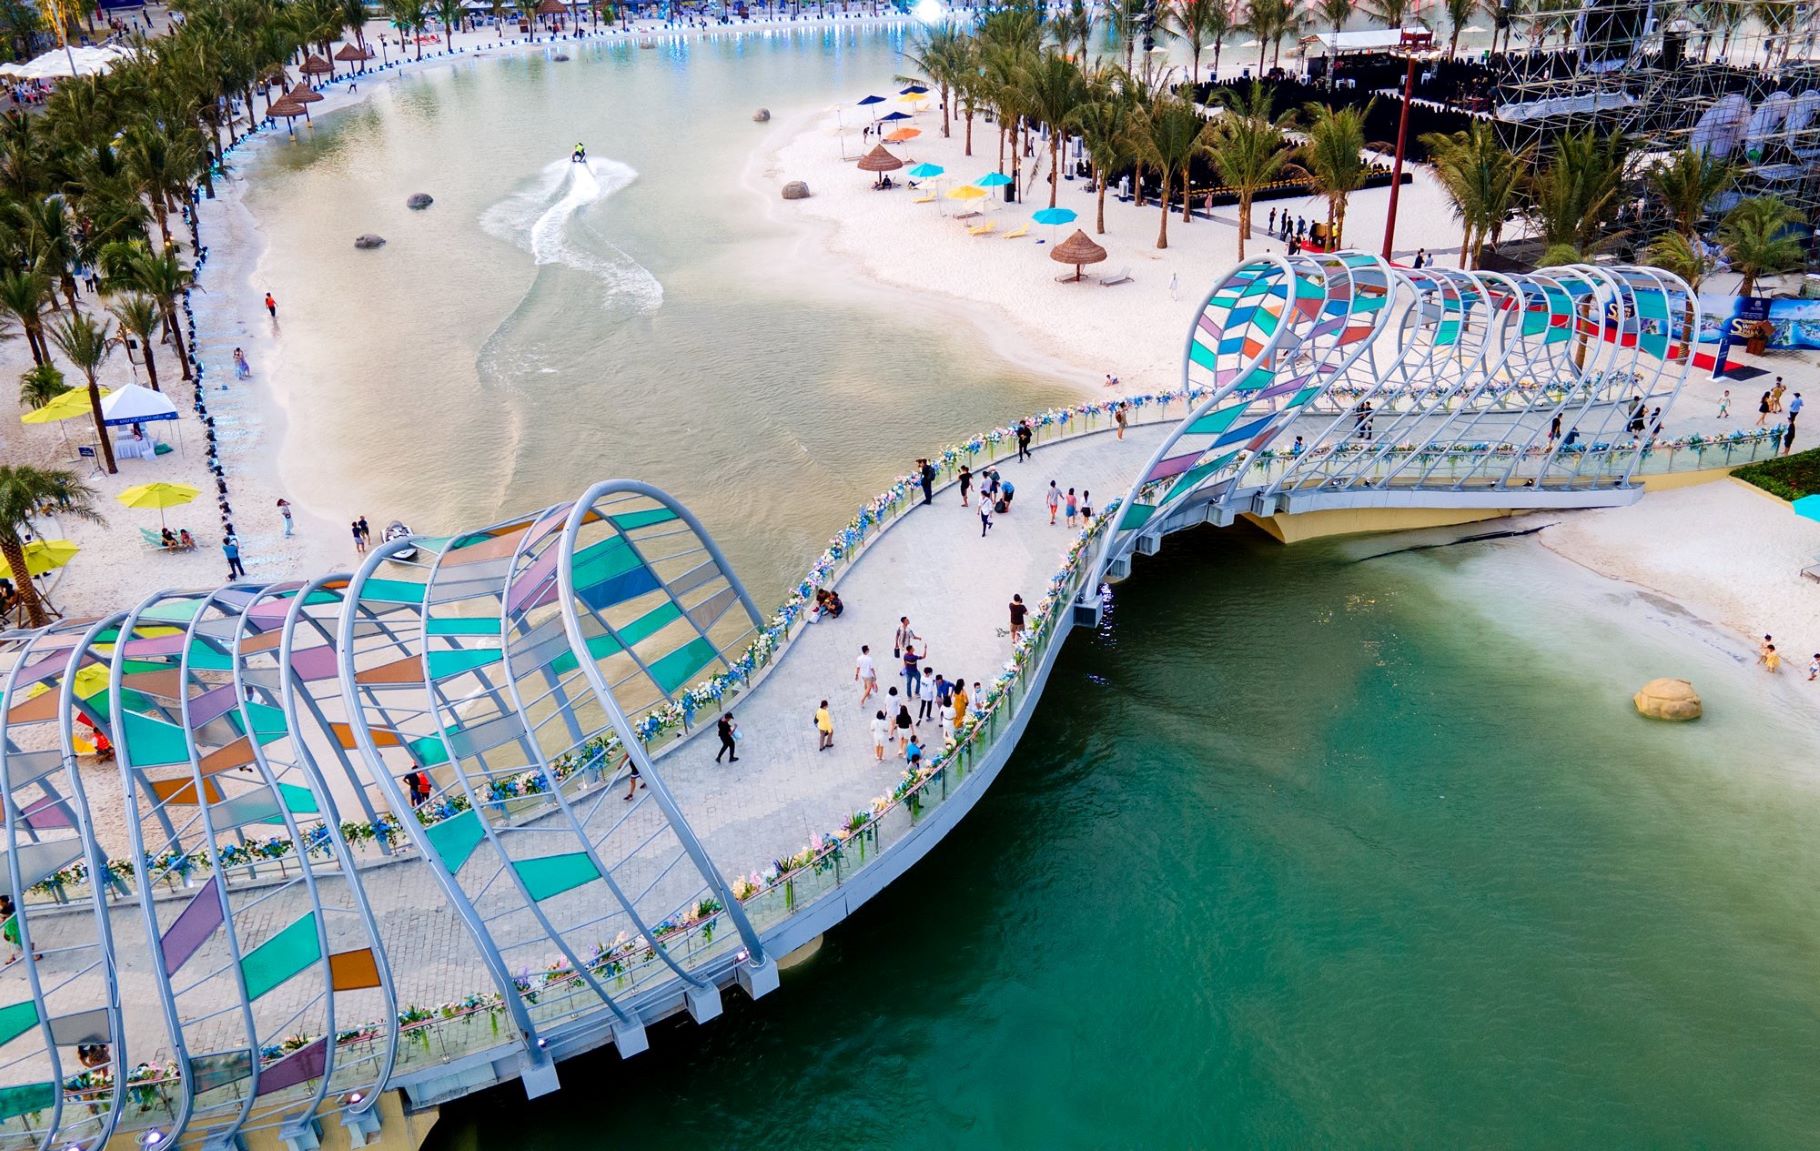 Tổ hợp công viên biển tạo sóng nhân tạo Royal Wave Park khiến nhiều người choáng ngợp trong ngày đầu khai trương - Ảnh 10.